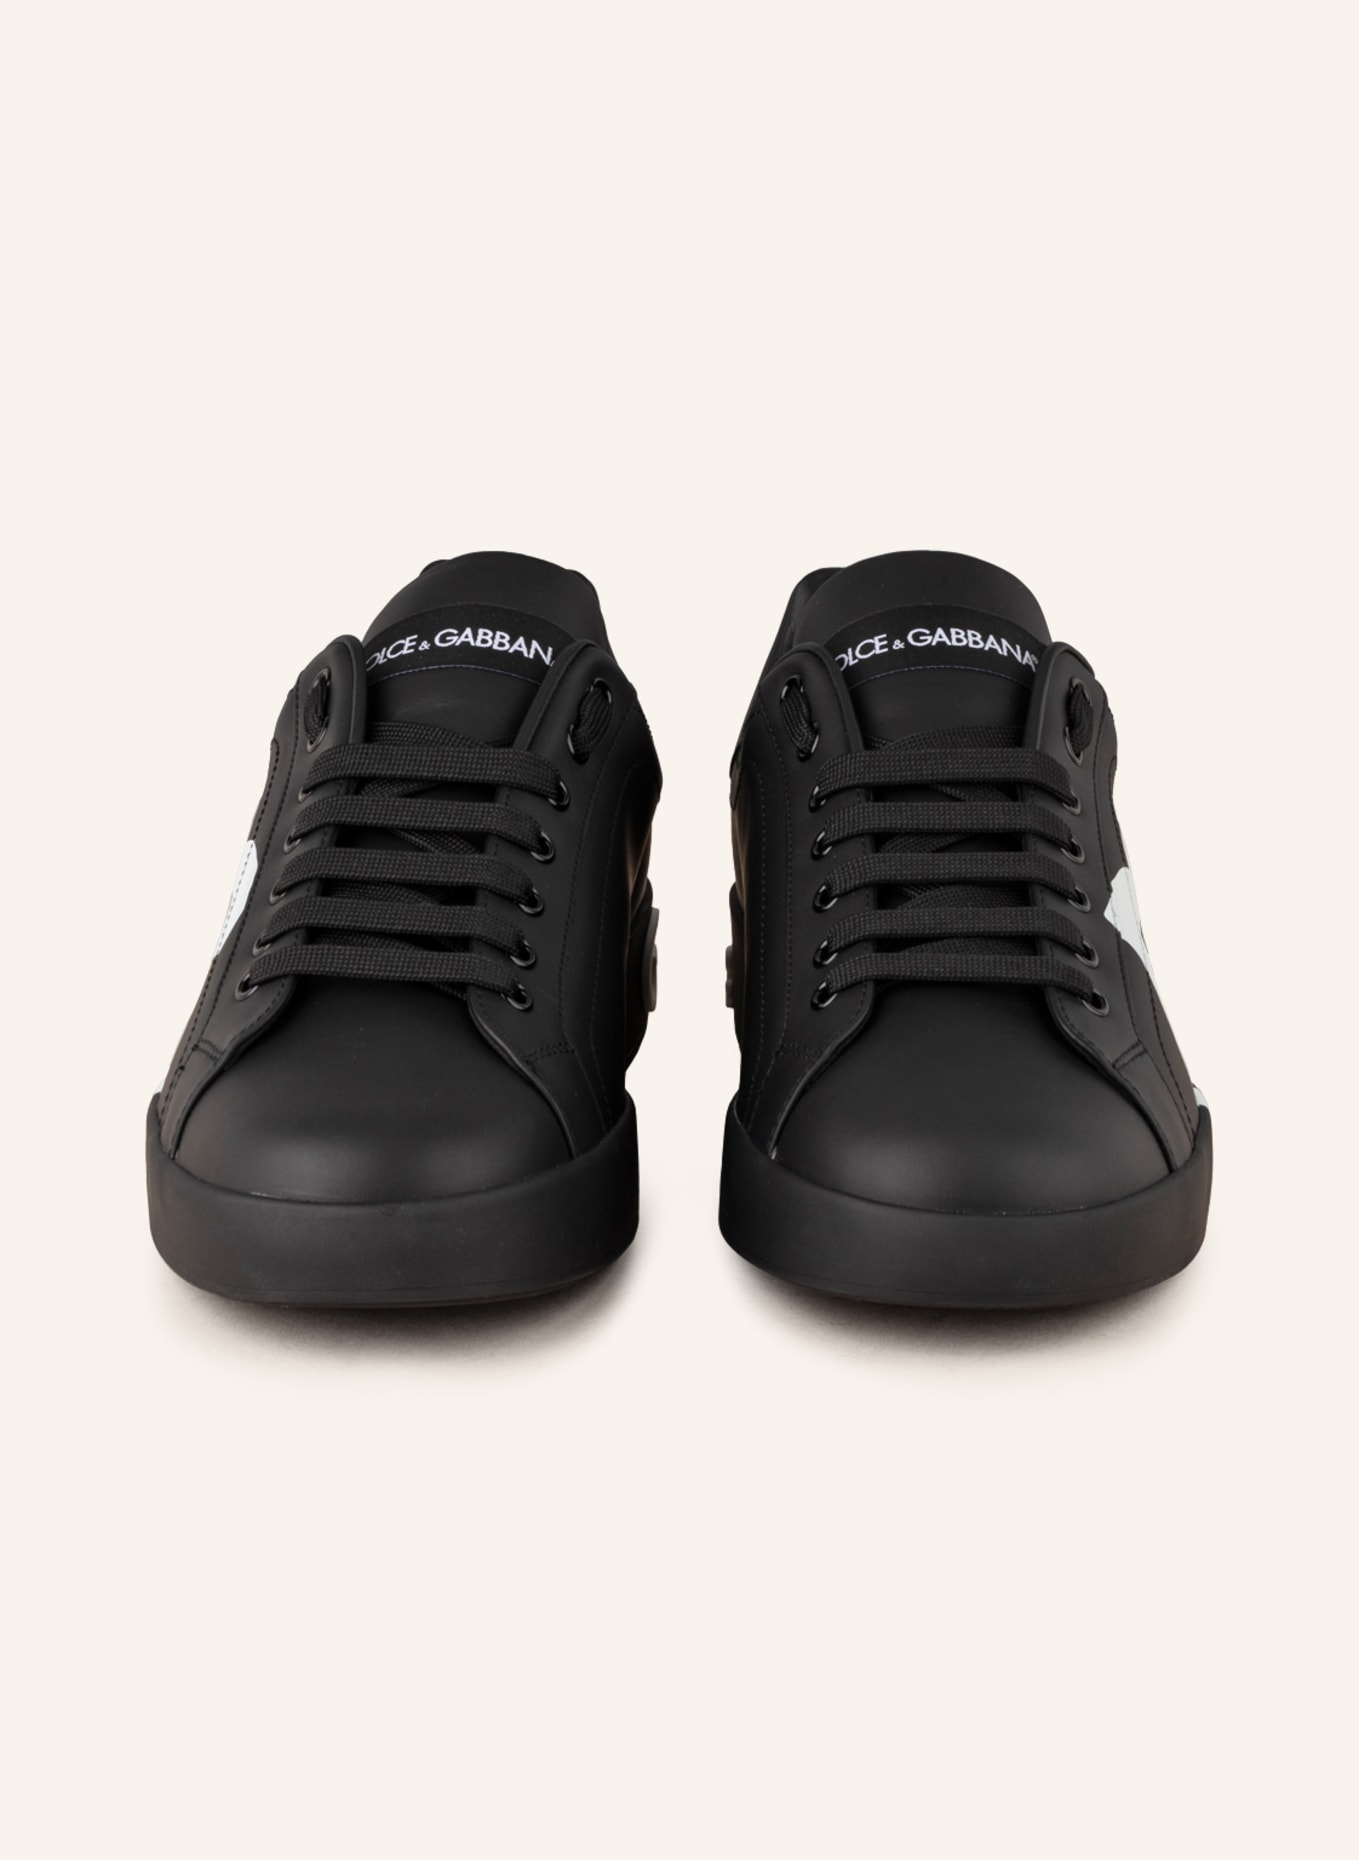 DOLCE & GABBANA Sneakers PORTOFINO, Color: BLACK/ WHITE (Image 3)